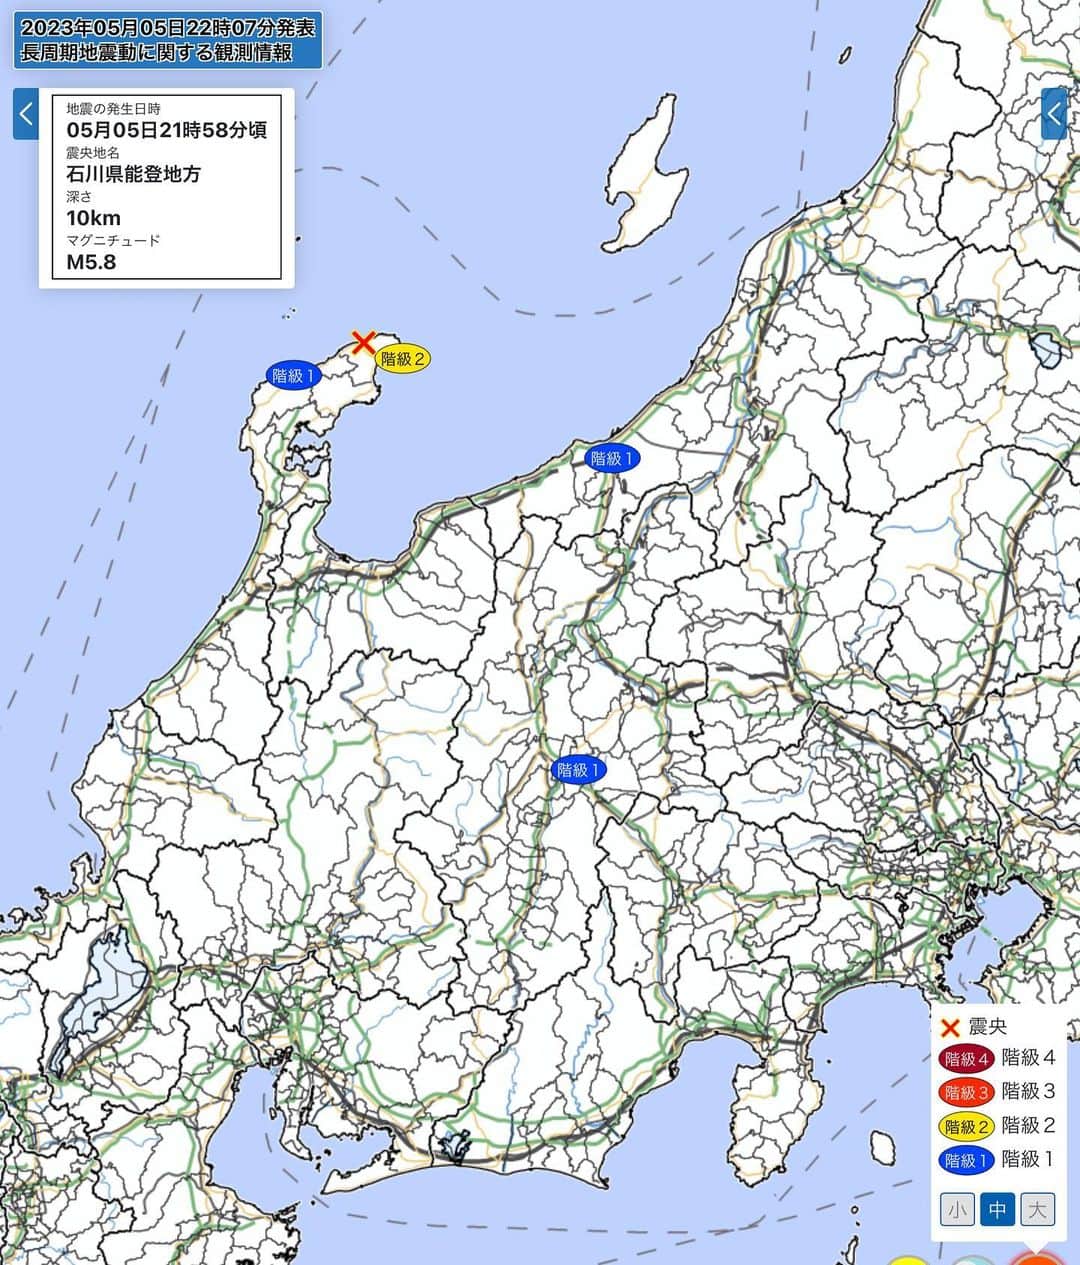 桂のインスタグラム：「長周期地震動に関する観測情報 令和５年５月５日２２時０７分　気象庁発表  ０５日２１時５８分ころの地震により、長周期地震動階級２を観測した地域があります。  震源地は、石川県能登地方（北緯３７．５度、東経１３７．２度）で、震源の深さは約１０ｋｍ、地震の規模（マグニチュード）は５．８と推定されます。  この地震により観測された最大長周期地震動階級は階級２、最大震度は震度５強です。  ［長周期地震動階級１以上が観測された地域］ 階級２　石川県能登 階級１　新潟県上越 長野県中部  #longperiodearthquakegroundmotion #earthquake #alert #japanmeteorologicalagency #jma  #ishikawa #niigata #nagano #長周期地震動 #地震 #震度5強 #階級2 #階級1 #気象庁 #石川 #新潟 #長野」